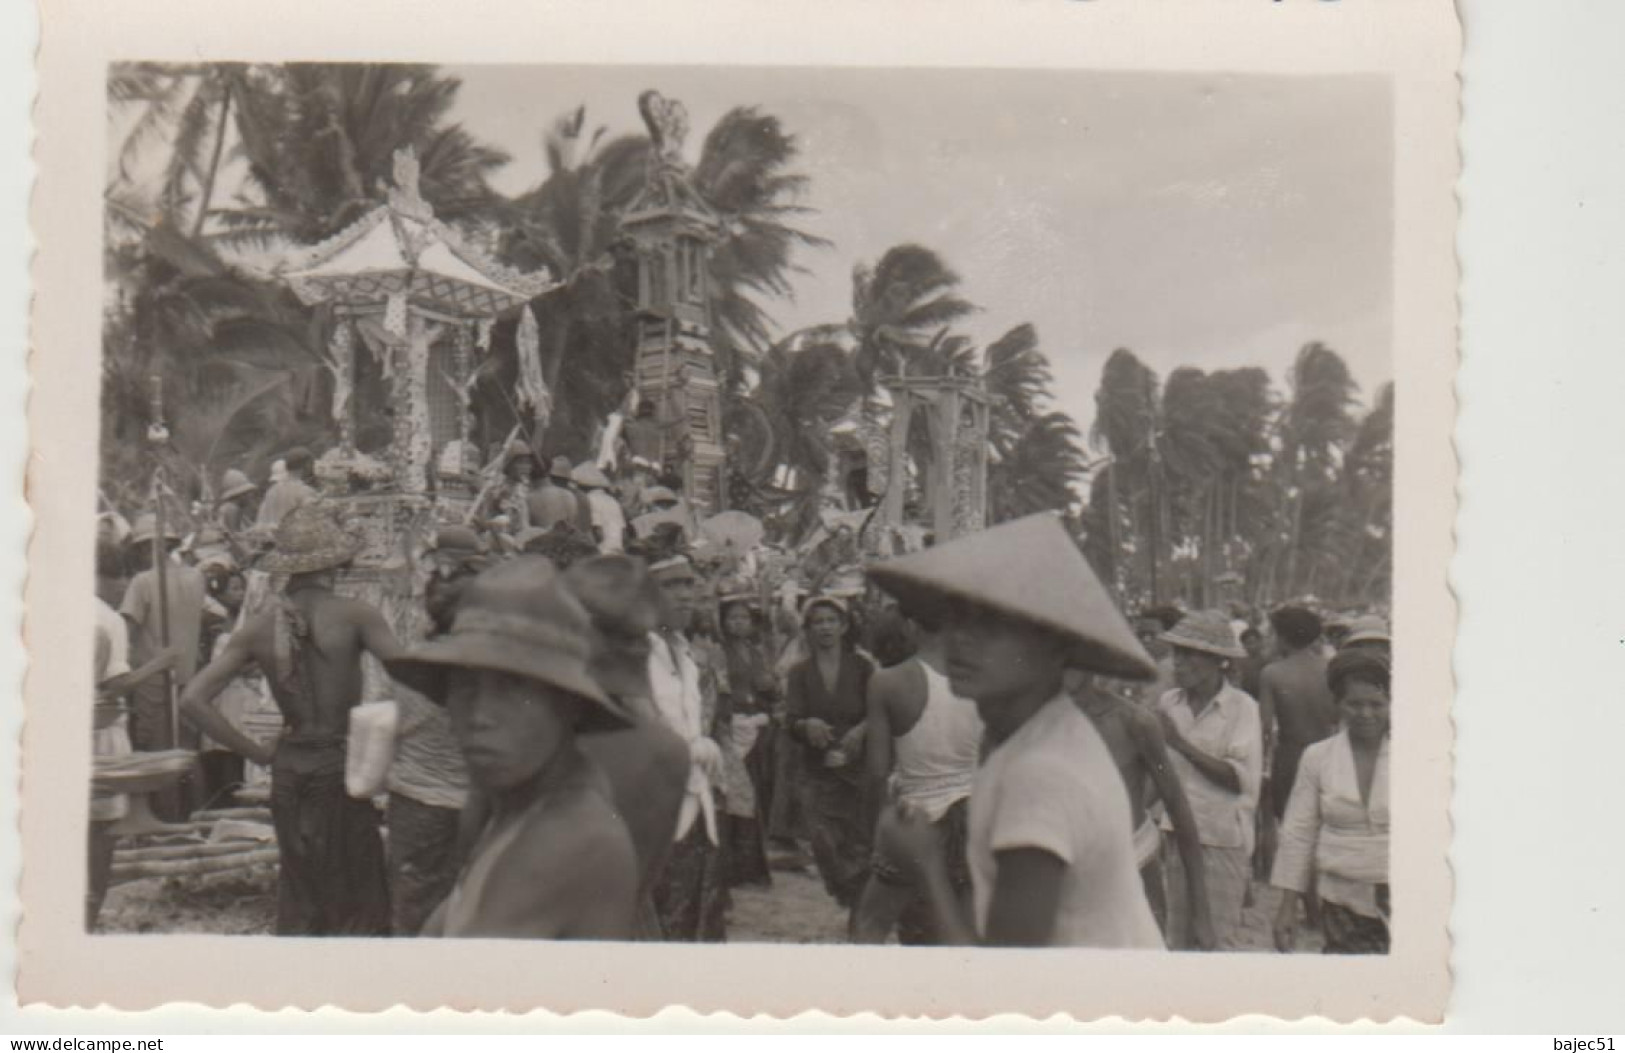 59 photos d'Indonésie de 1952 " dont 11 photos de crémation " voir détails de toutes les photos "dont belle animations